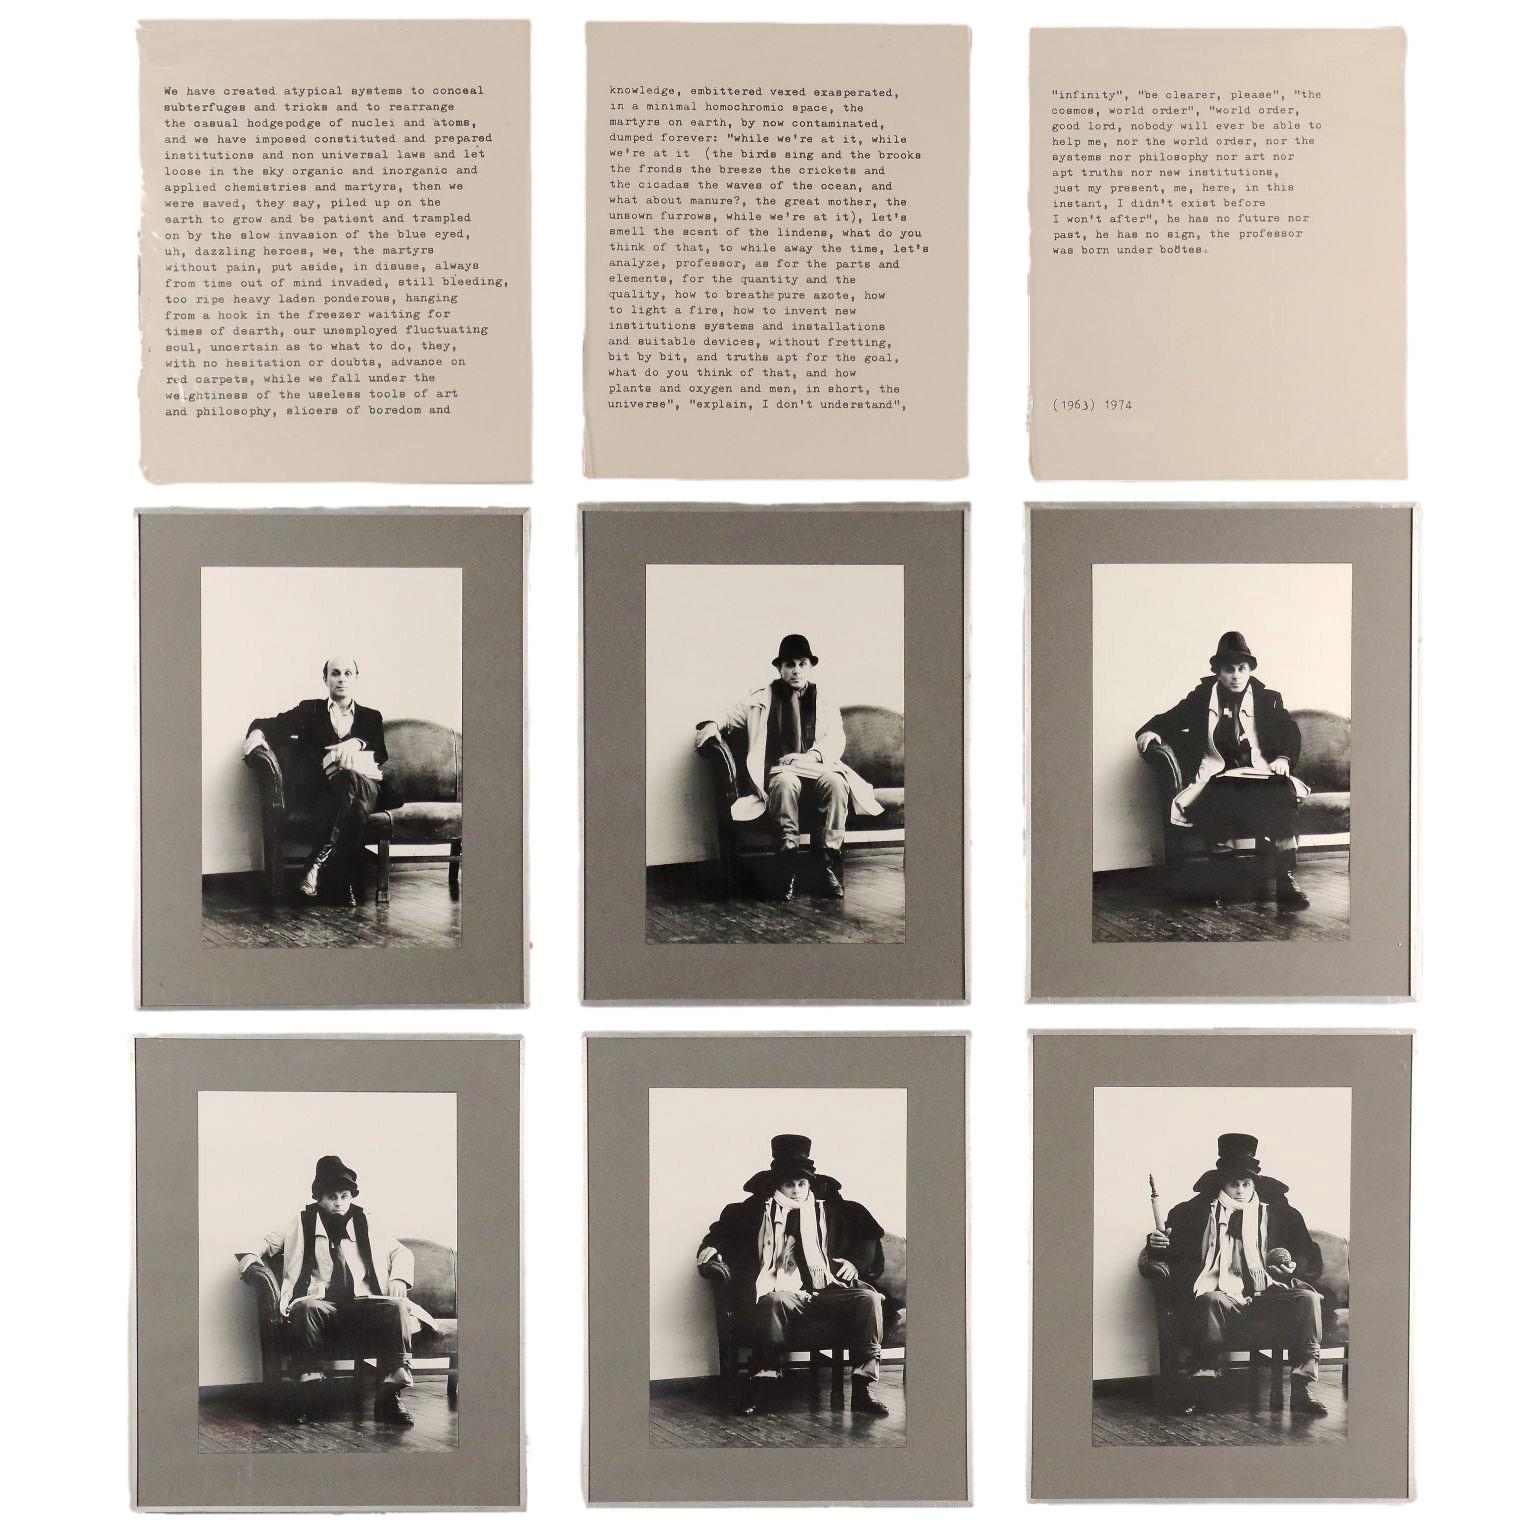 Cioni Carpi Black and White Photograph - Abbiamo creato Atipici Sistemi 1963/74